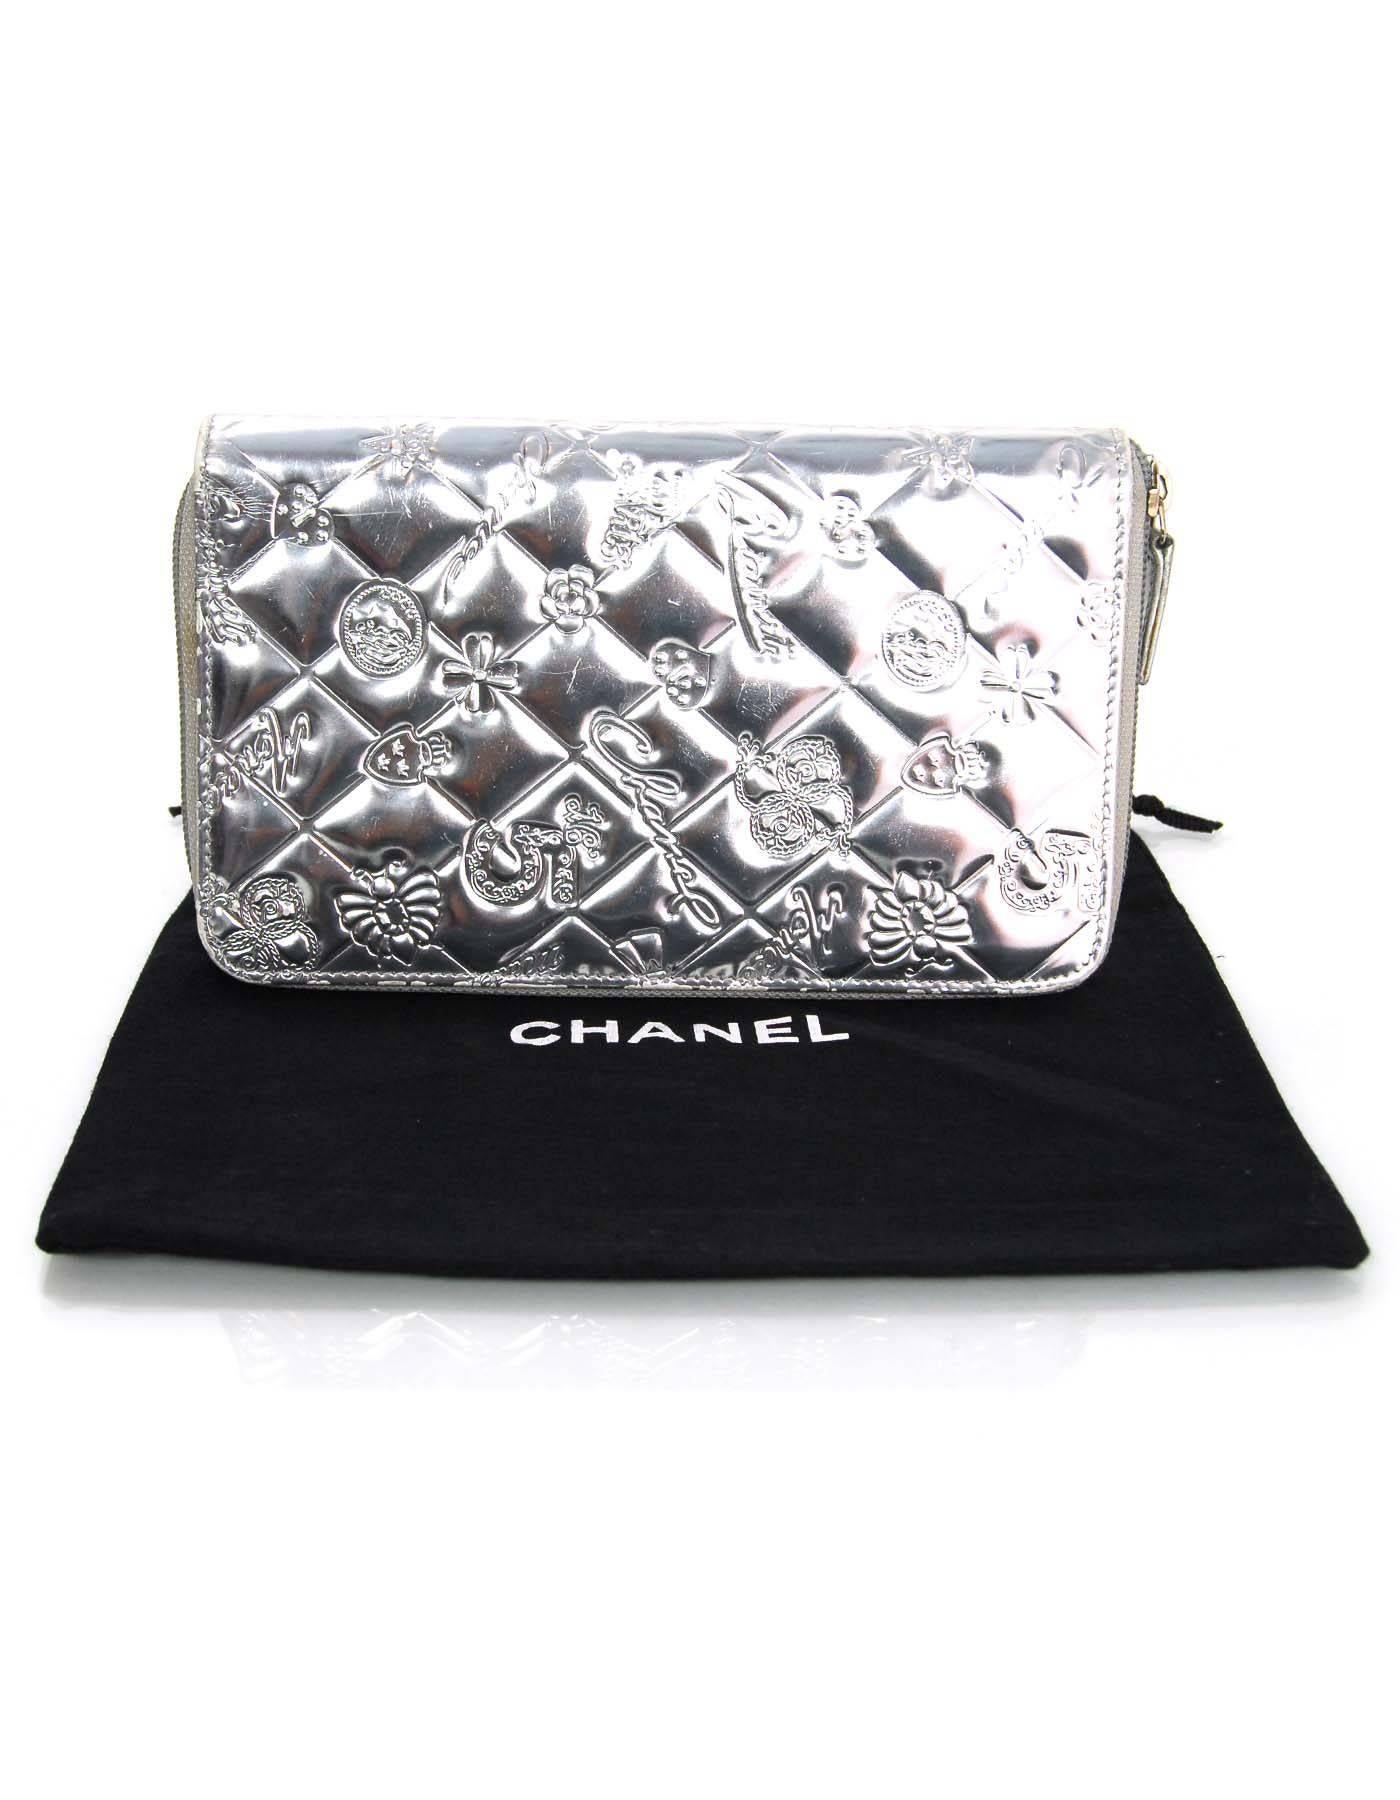 Chanel Silver Mirror Icons Zip Around XL Organizer Wallet 6